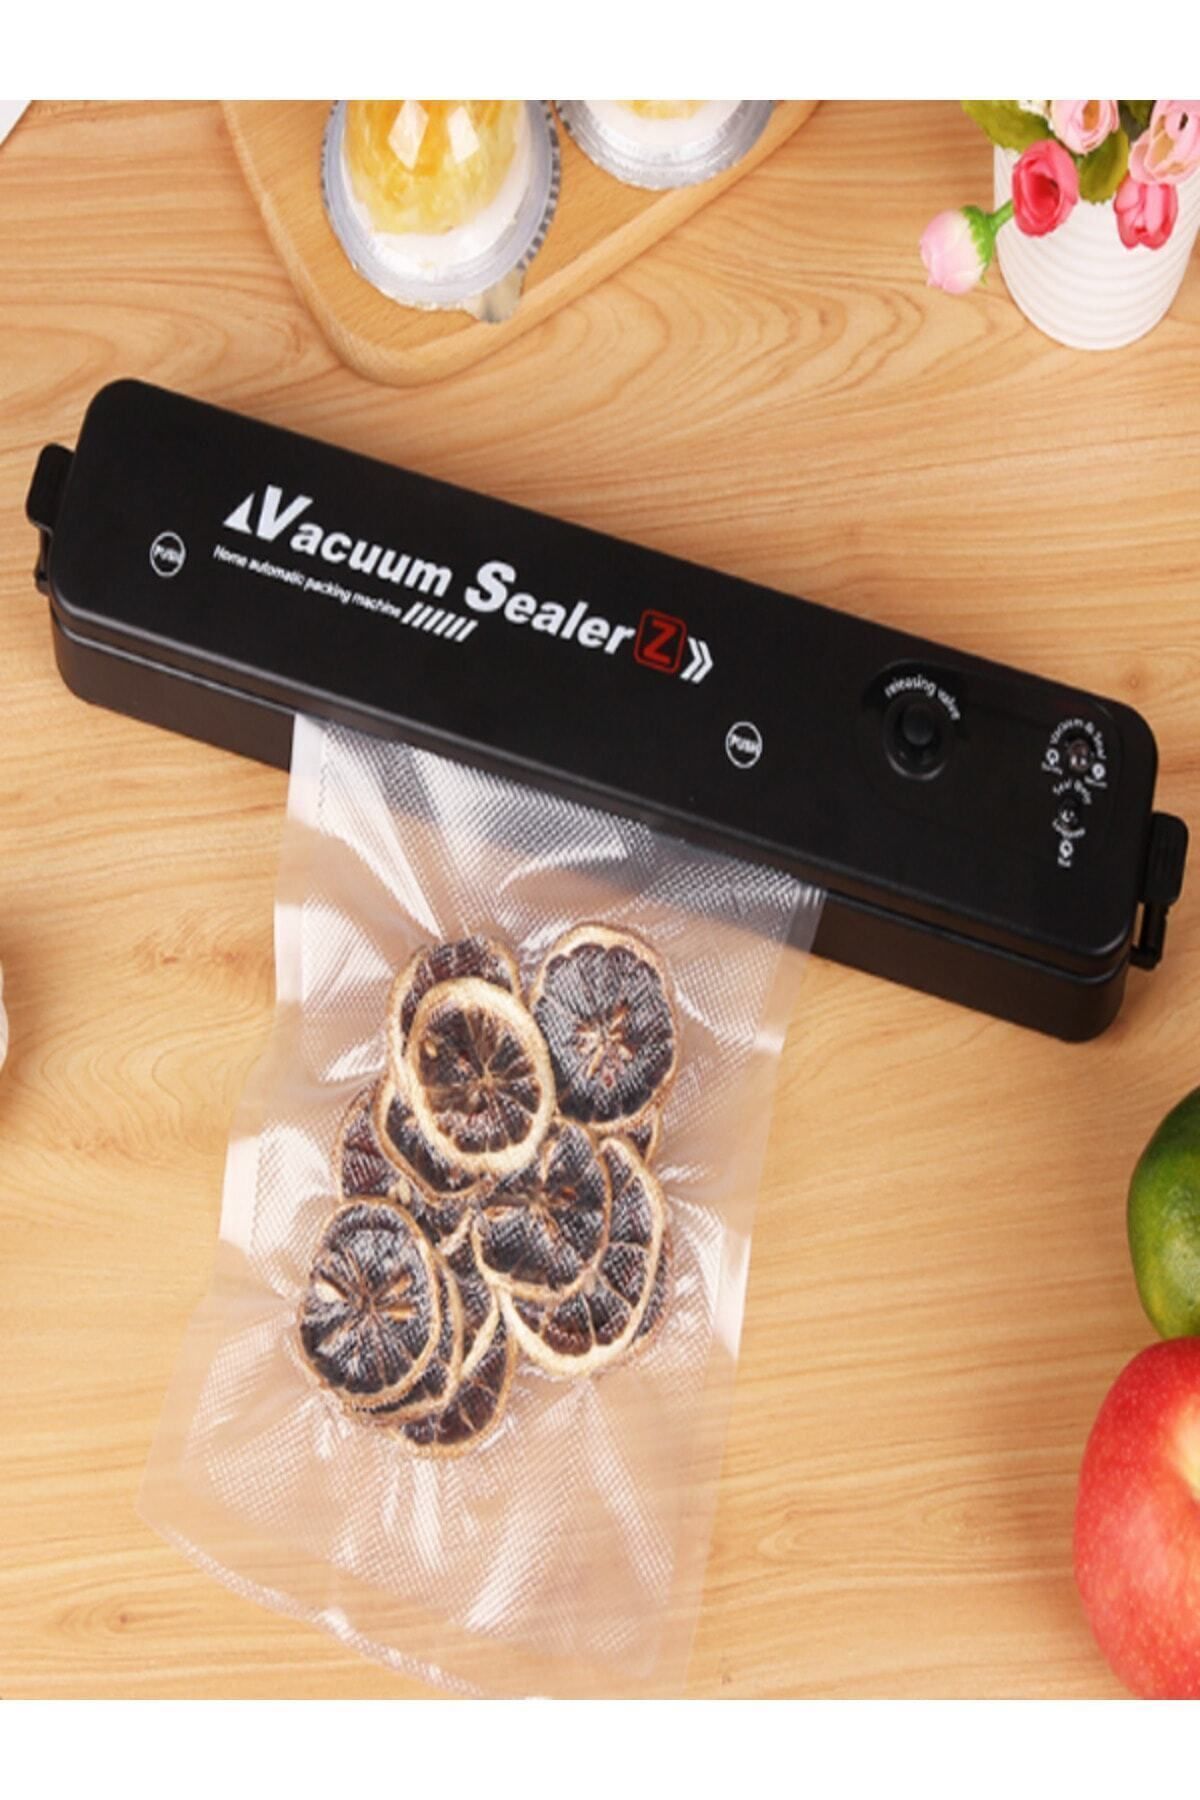 Vacuum Sealer Vakum Makinesi Ev Gıda Yapıştırma Makinesi Gıda Vakum Otomatik Vakum Yapıştırma Makinesi